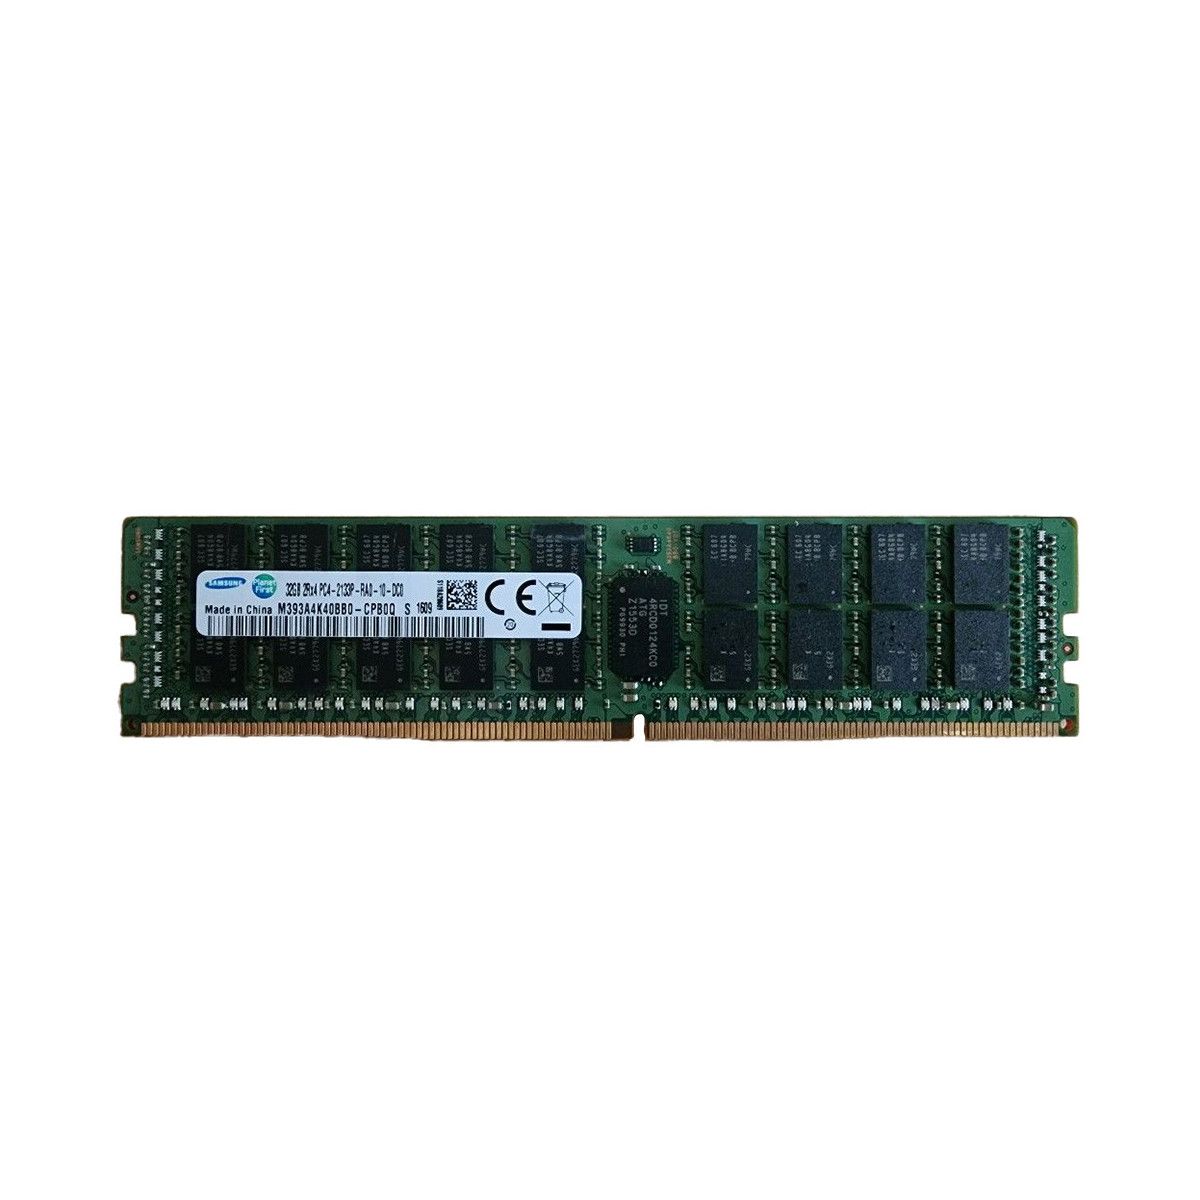 728629-B21-MS - Memstar 1x 32GB DDR4-2133 RDIMM PC4-17000P-R - Mem-Star compatibel OEM geheugen 1 - Memstar 